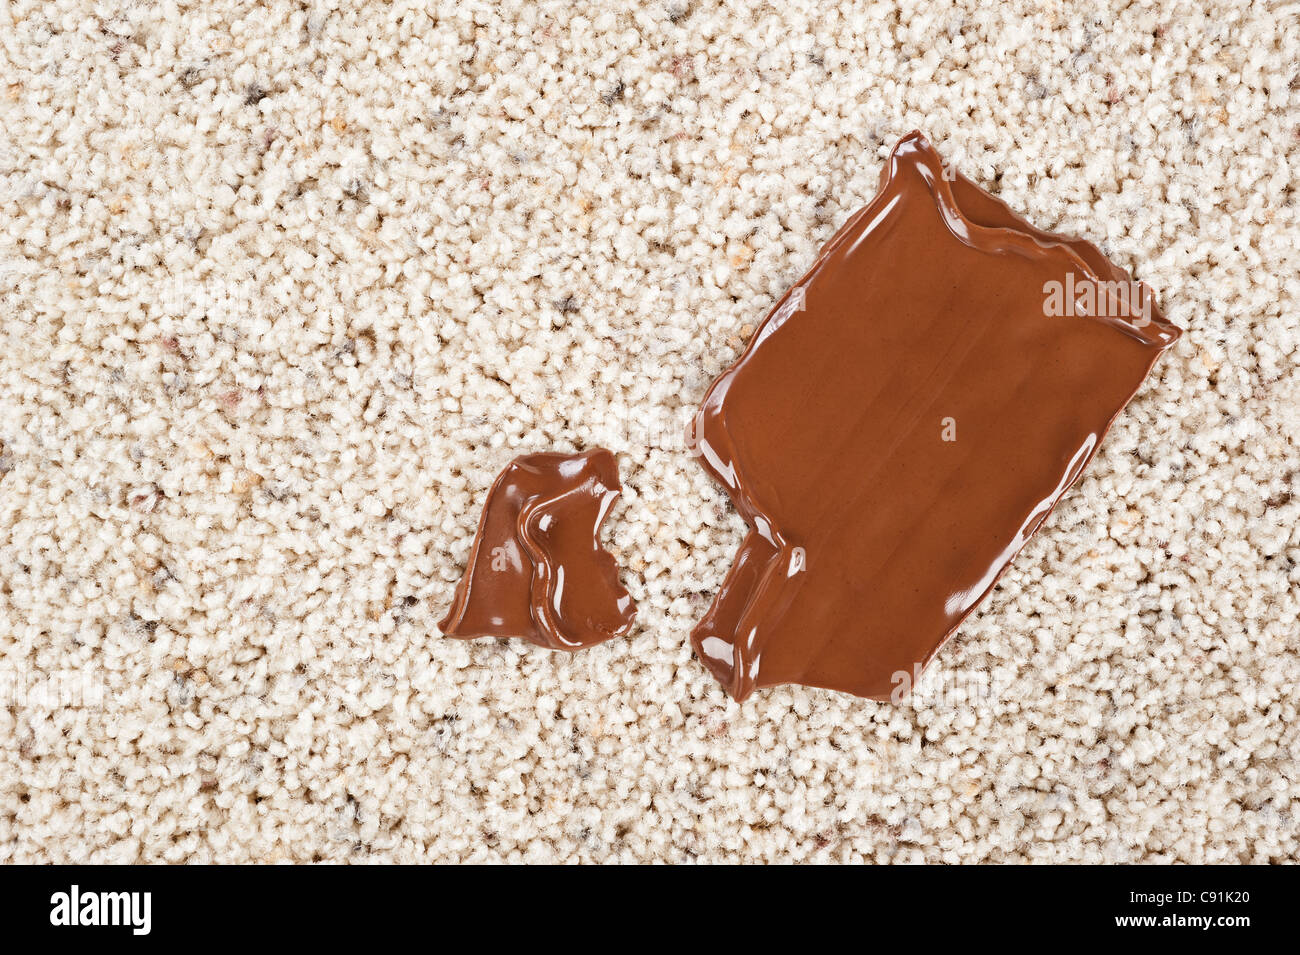 Ein schmelzende Schokolade Schokoriegel fiel auf einen neuen Teppichboden. Stockfoto